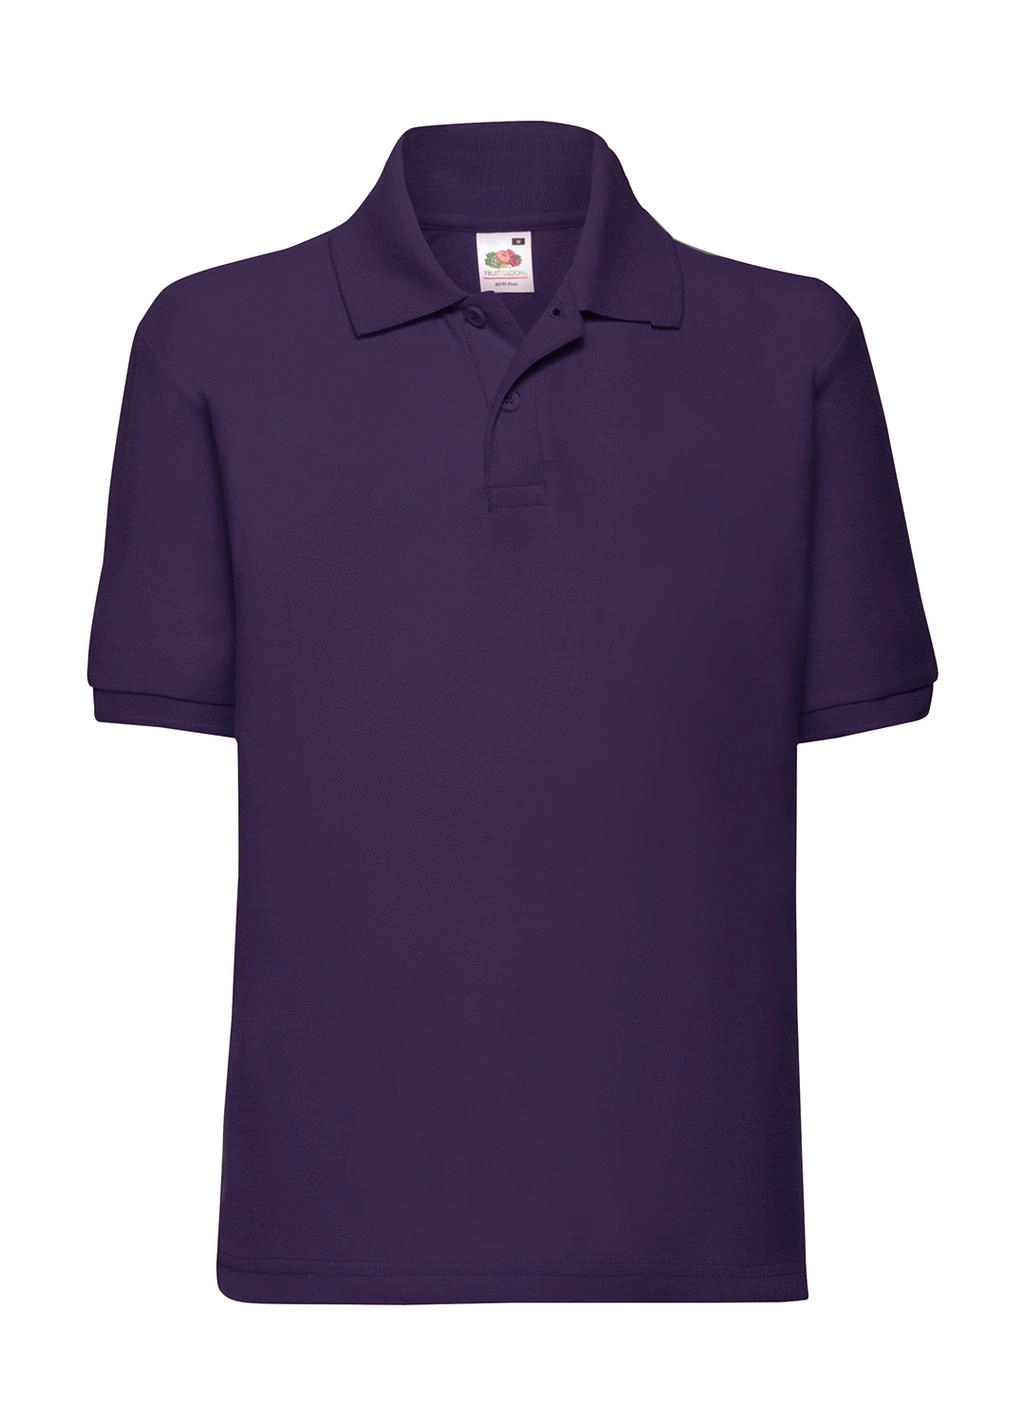 Kids` 65/35 Polo zum Besticken und Bedrucken in der Farbe Purple mit Ihren Logo, Schriftzug oder Motiv.